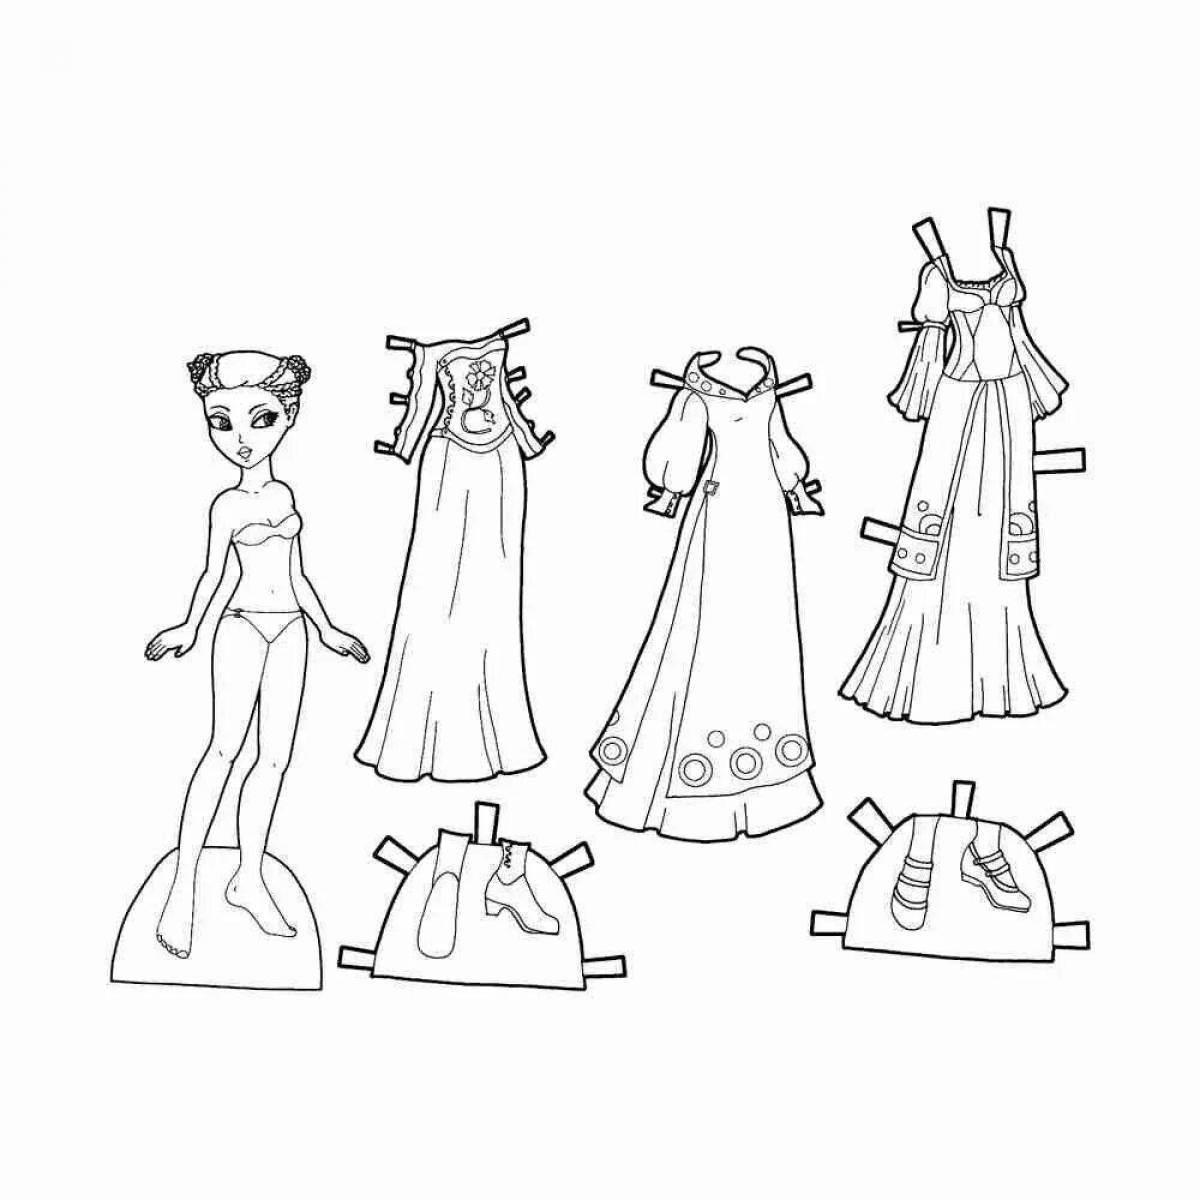 Rampant coloring paper doll princesses